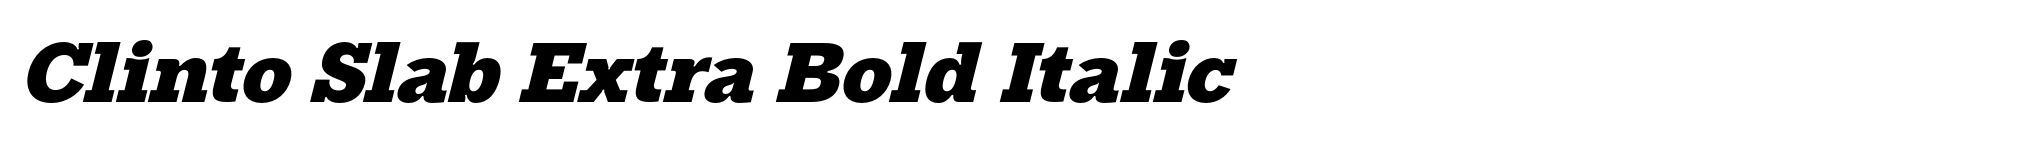 Clinto Slab Extra Bold Italic image